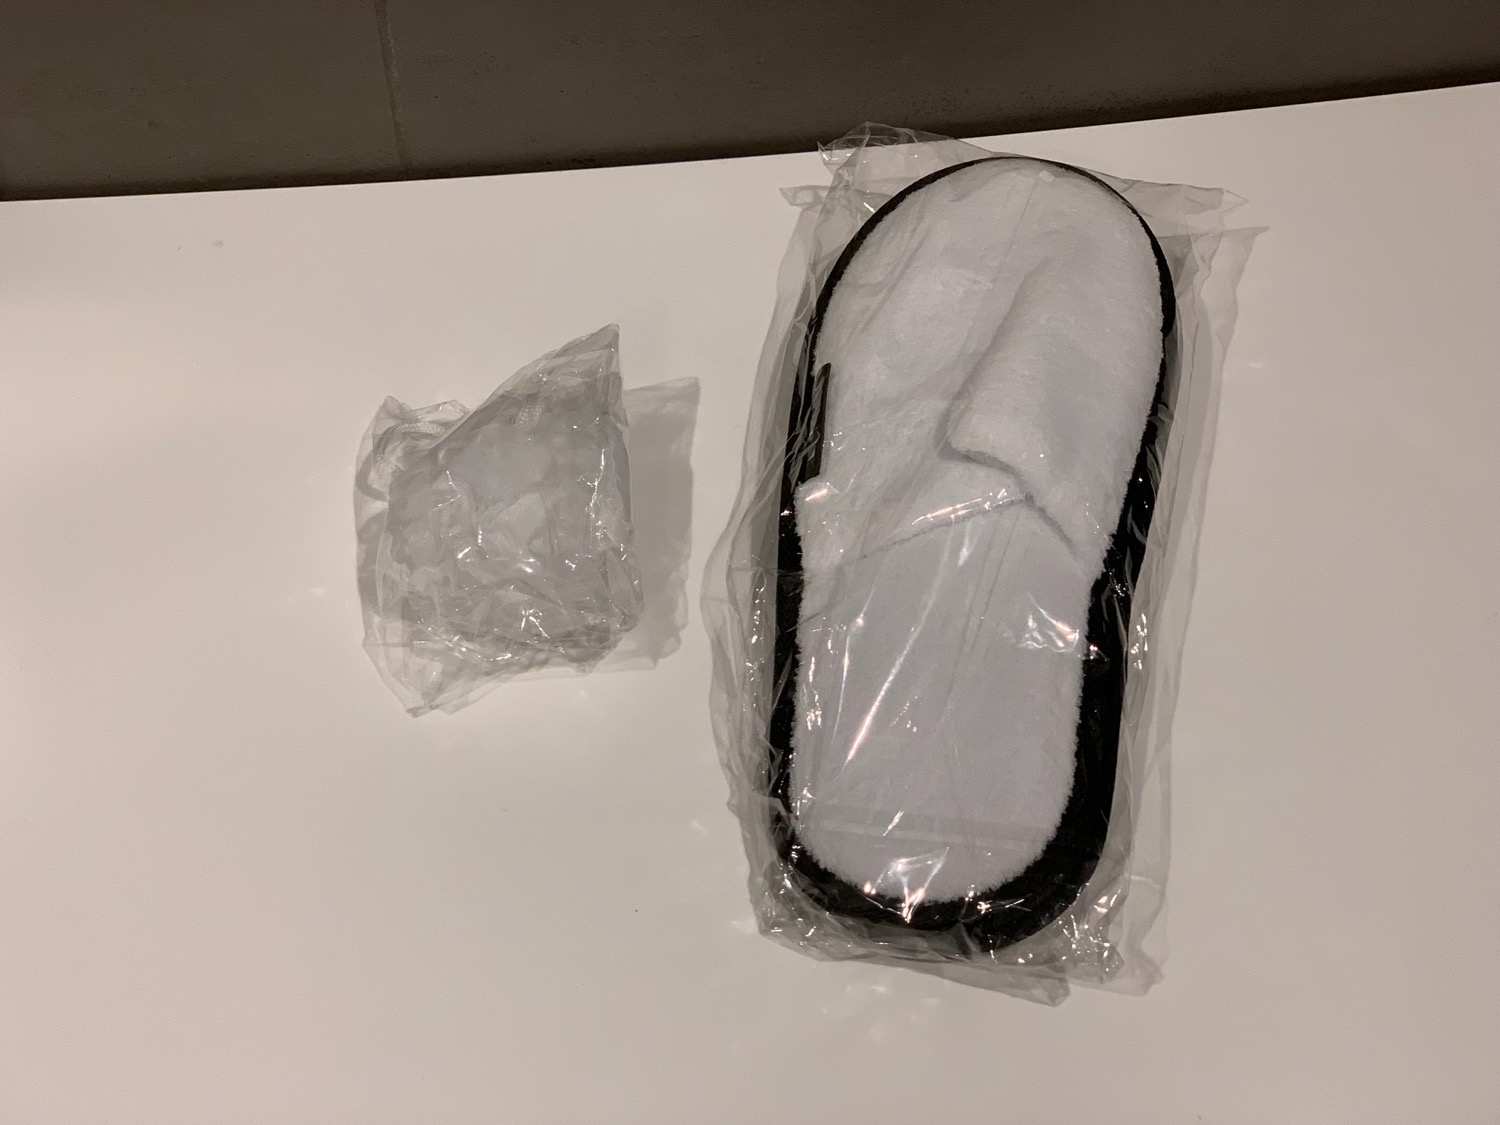 a slipper in a plastic bag